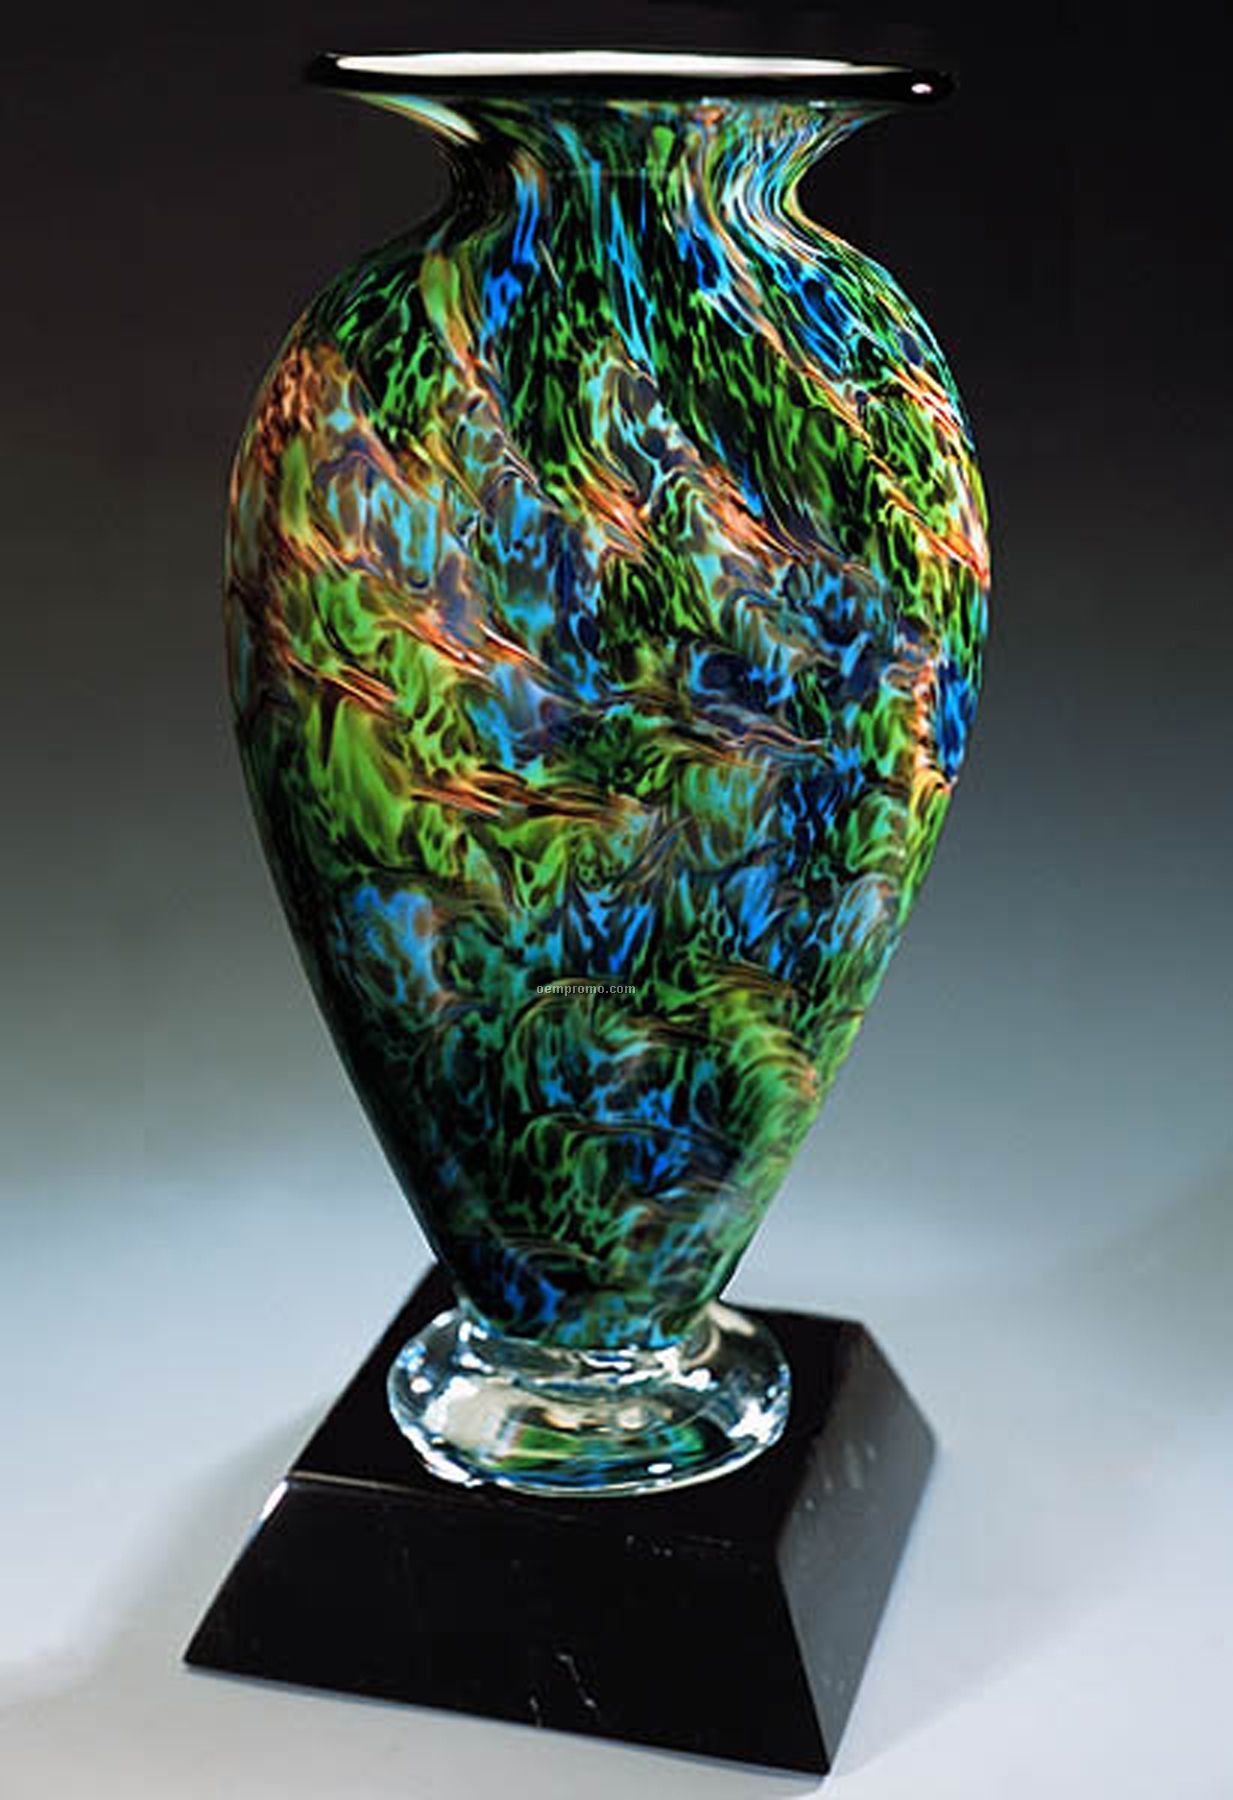 Jade Glen Mercury Sculpture Award W/ Marble Base (4.25